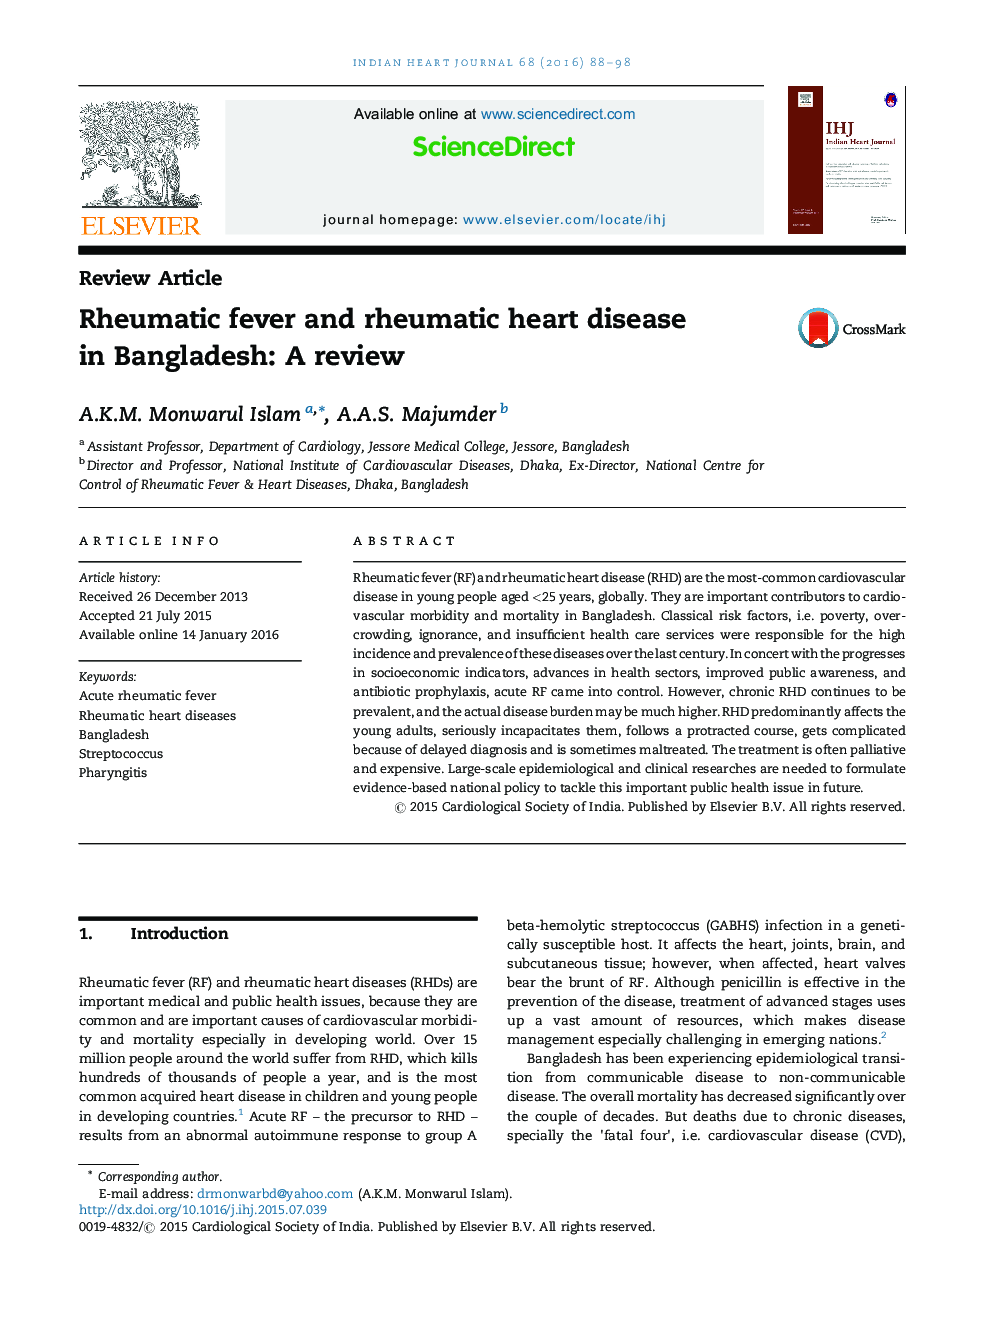 تب روماتیسمی و بیماری قلب روماتیسمی در بنگلادش: بررسی